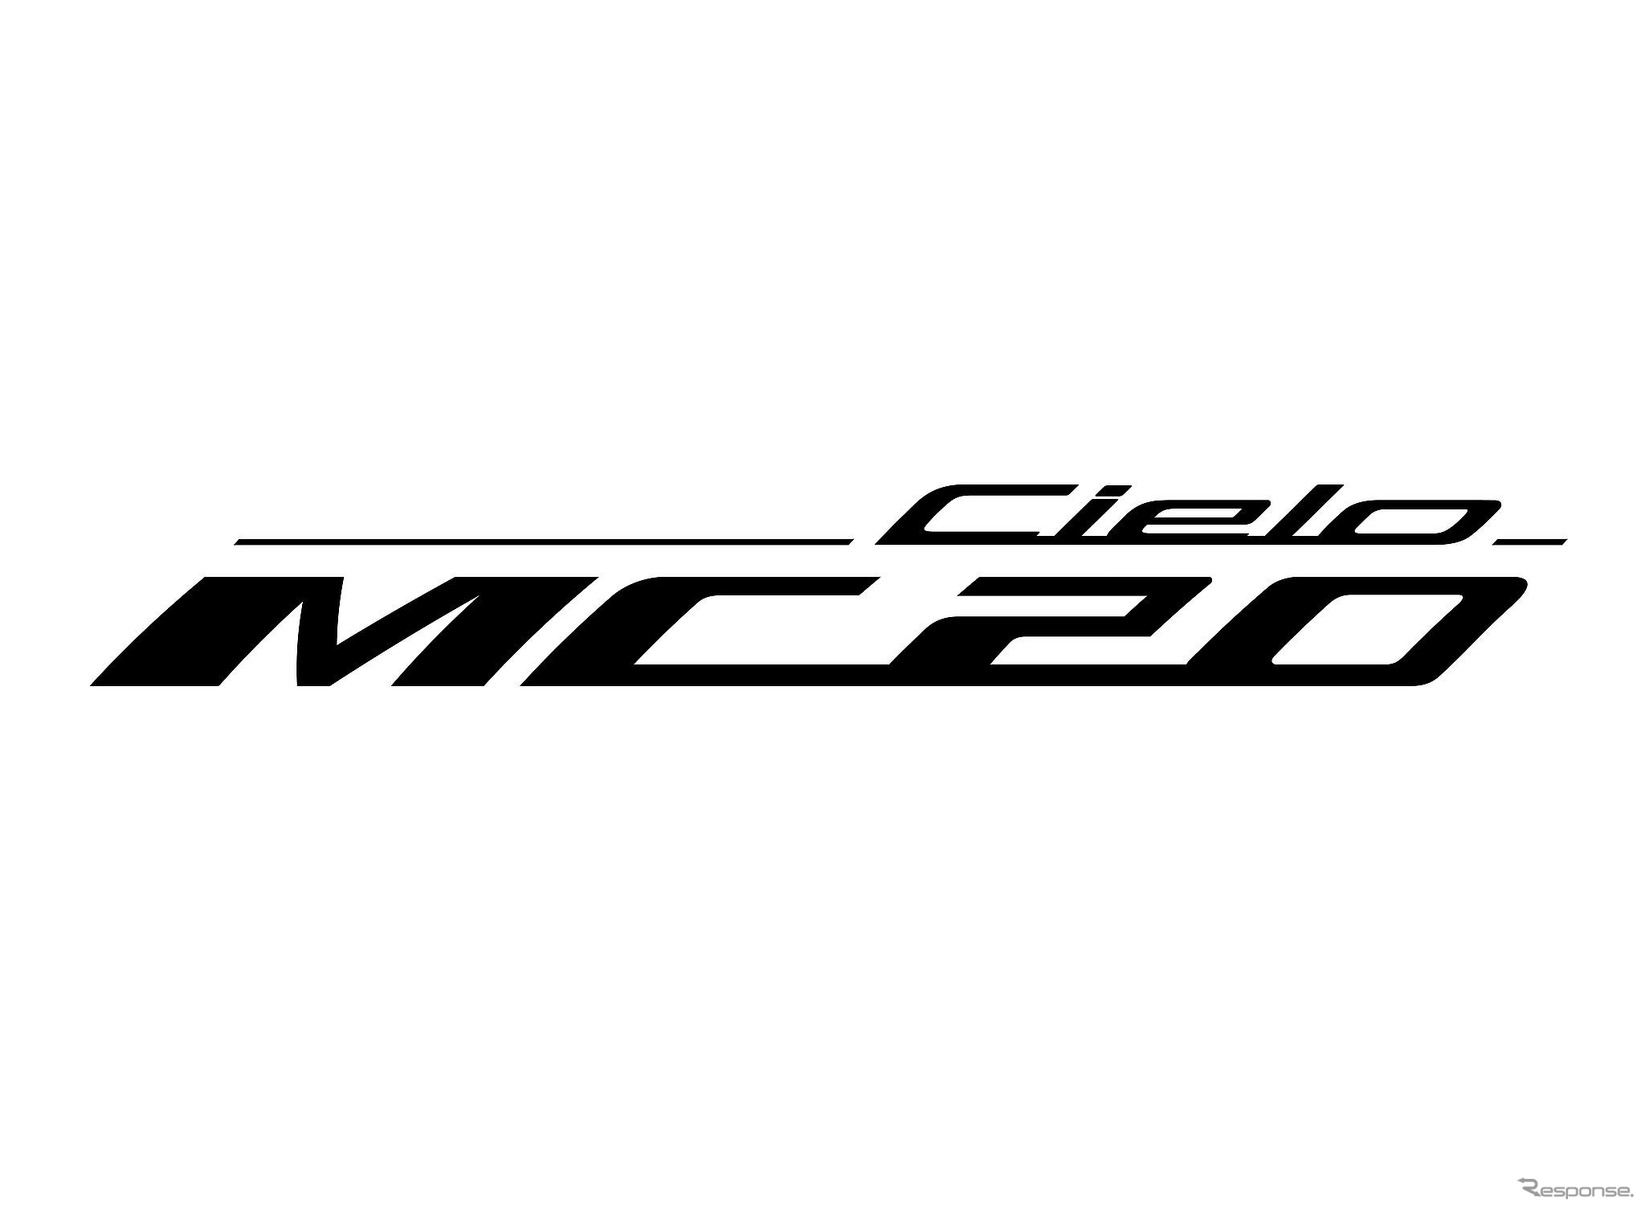 マセラティ MC20 チェロ のロゴ